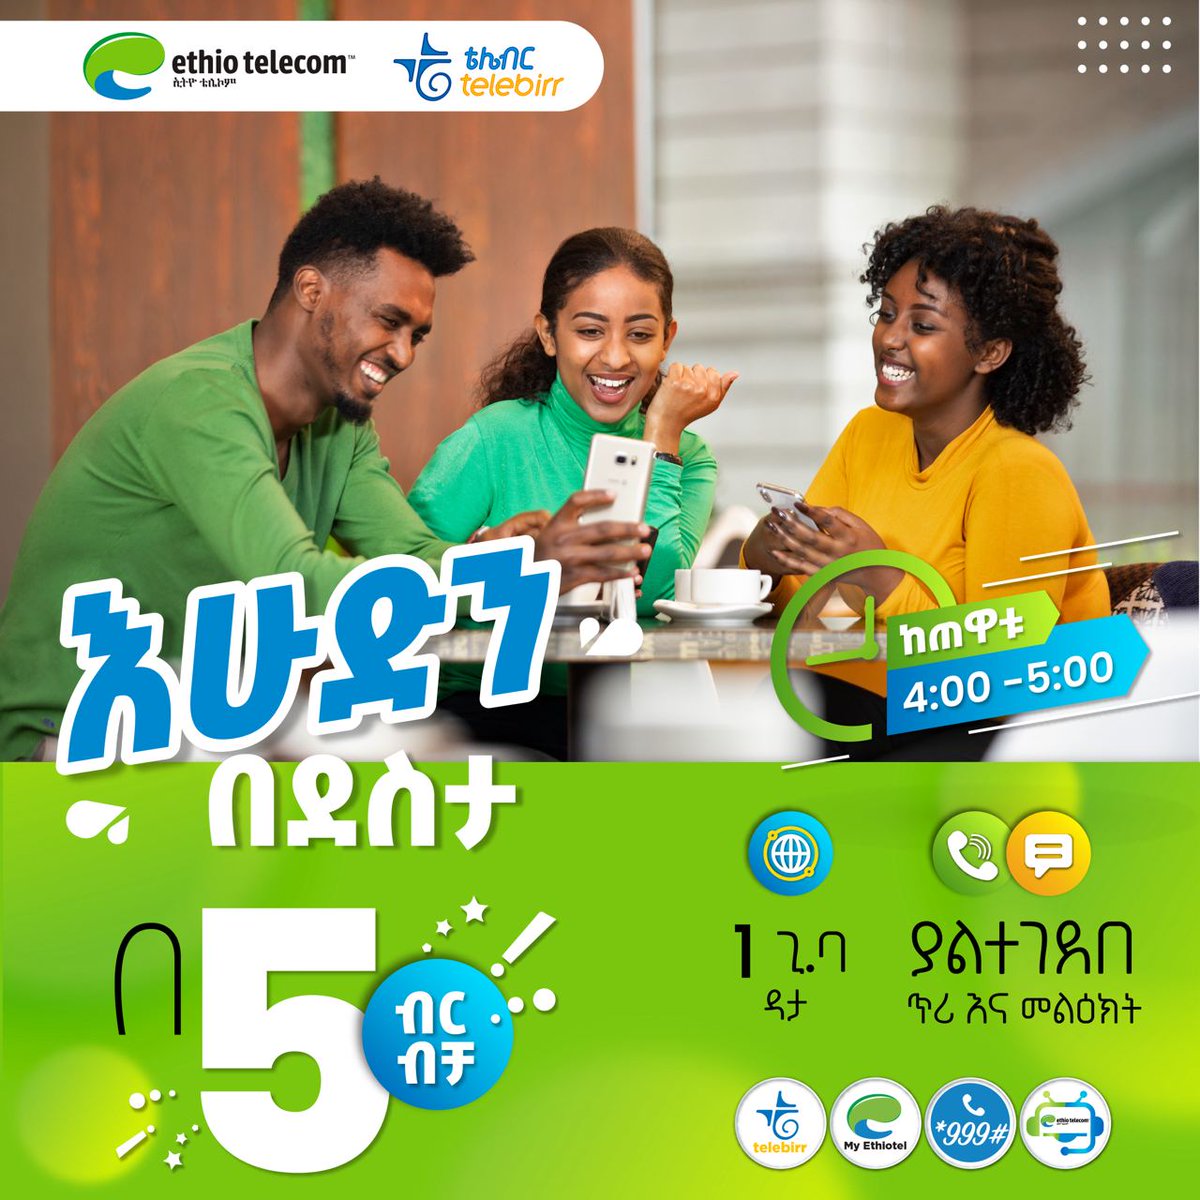 መልካም የእረፍት ቀን! ከረፋዱ 4:00-5:00 ሰዓት ያልተገደበ ደቂቃ እና መልዕክት ከ1 ጊ.ባ ዳታ ጋር በ5 ብር ብቻ ገዝተው እሁድን በደስታ ይጀምሩ! #Sunday #StayConnected #Ethiotelecom #telebirr #DigitalAfrica #DigitalEthiopia #RealizingDigitalEthiopia